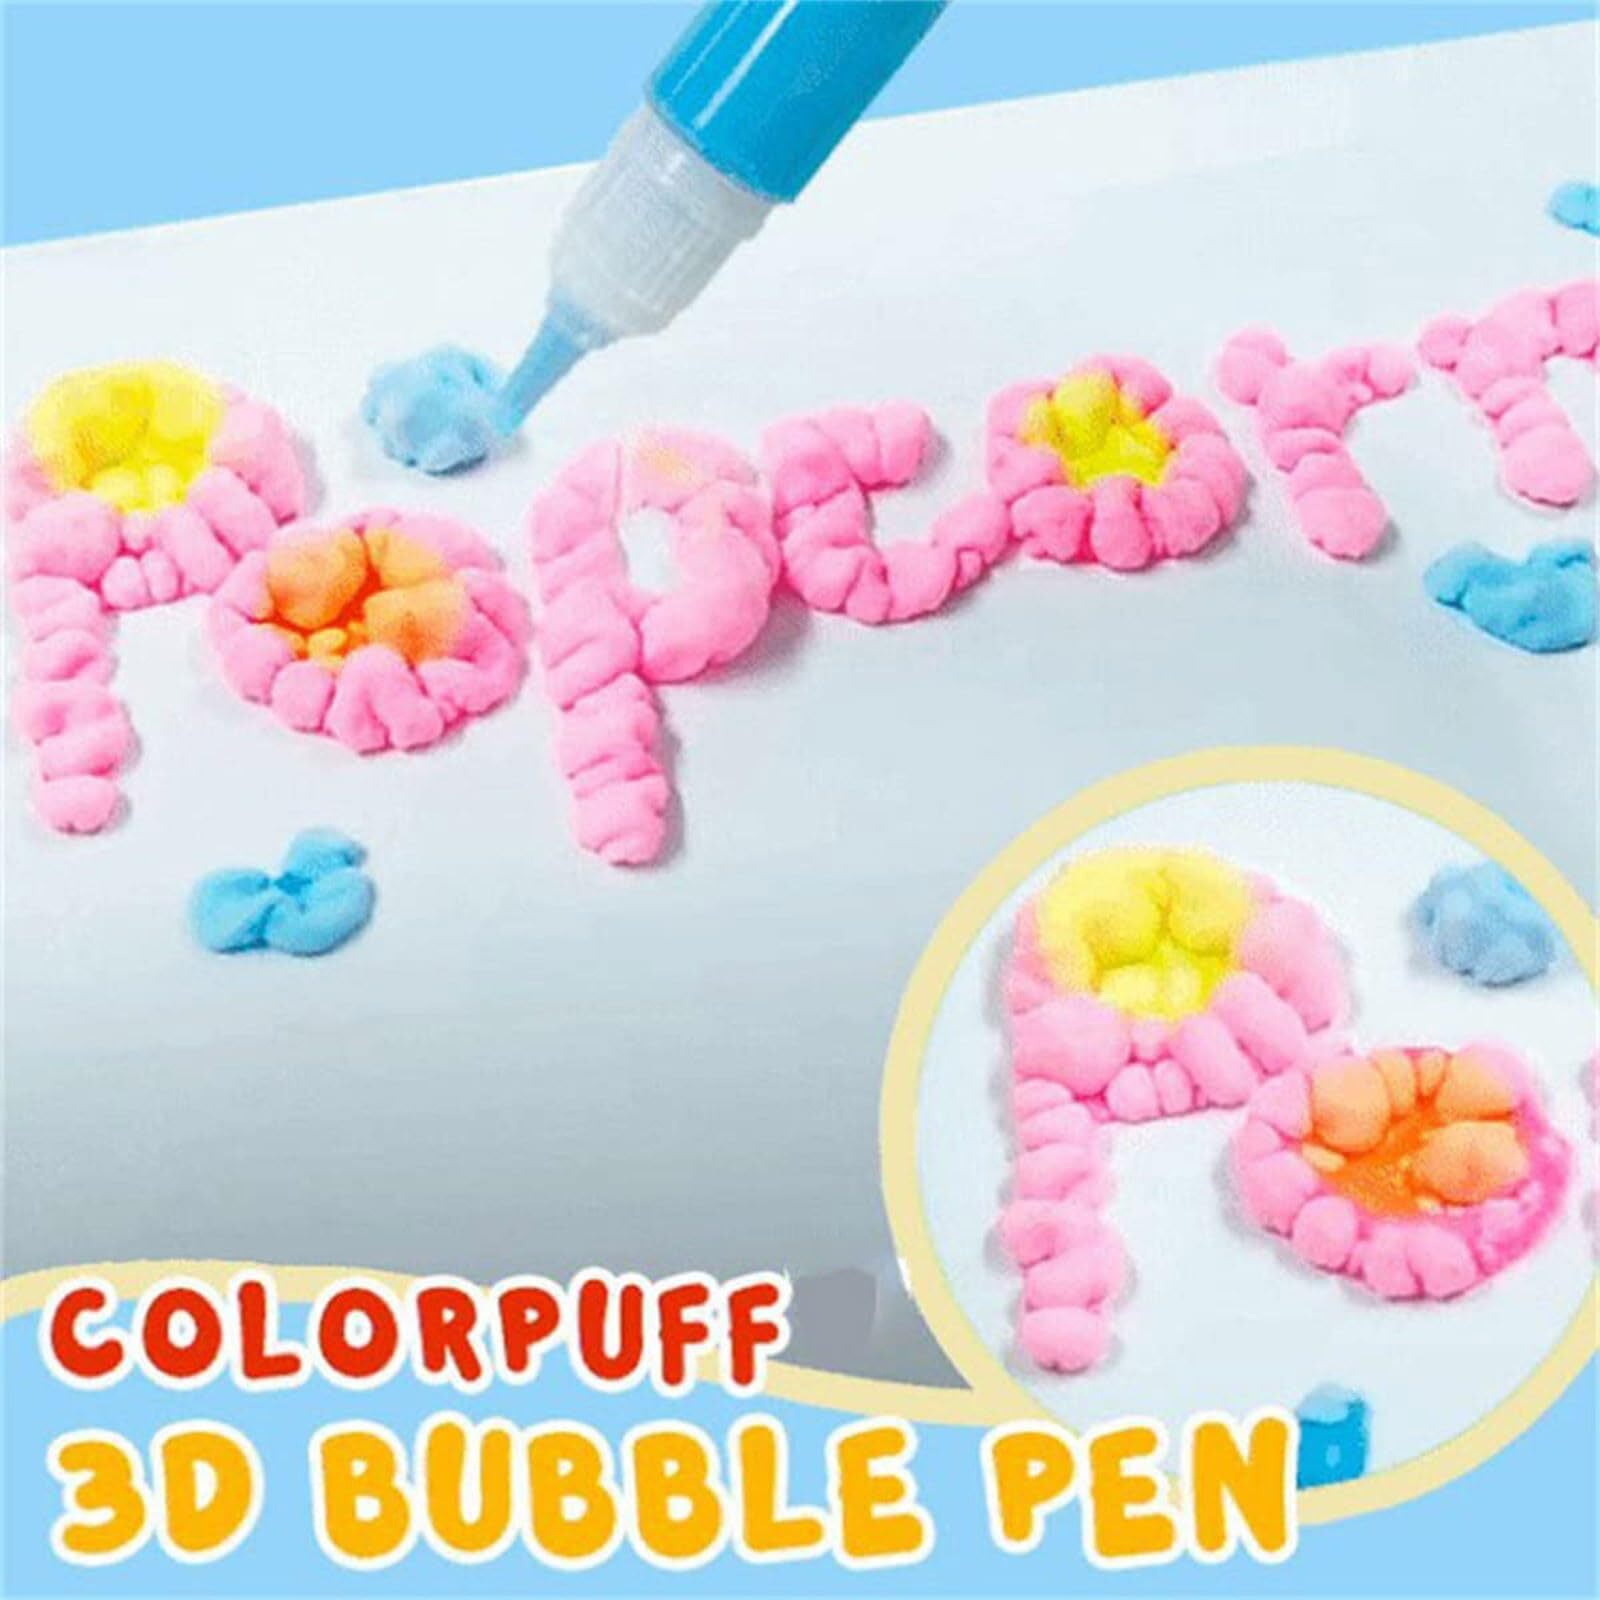 E Set of 6 3D Popcorn Pop up Puffy Paint Art Pen DIY Christmas Card,  Postcard, Scrapbooking 